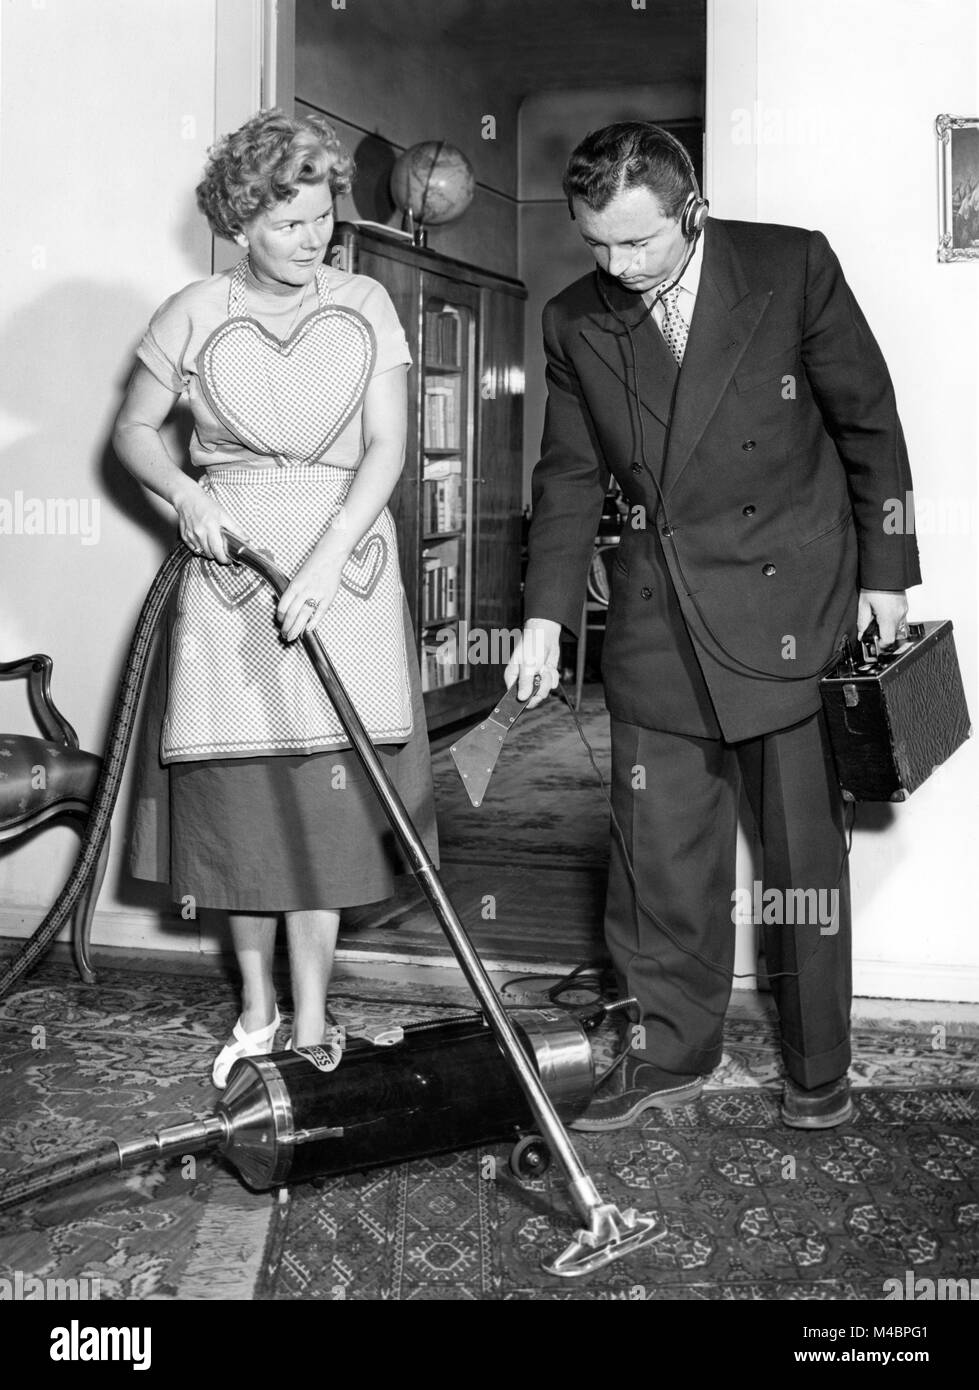 Représentant et femme au foyer avec l'aspirateur,homme mesurant le bruit,1950,emplacement exact inconnu,Allemagne Banque D'Images